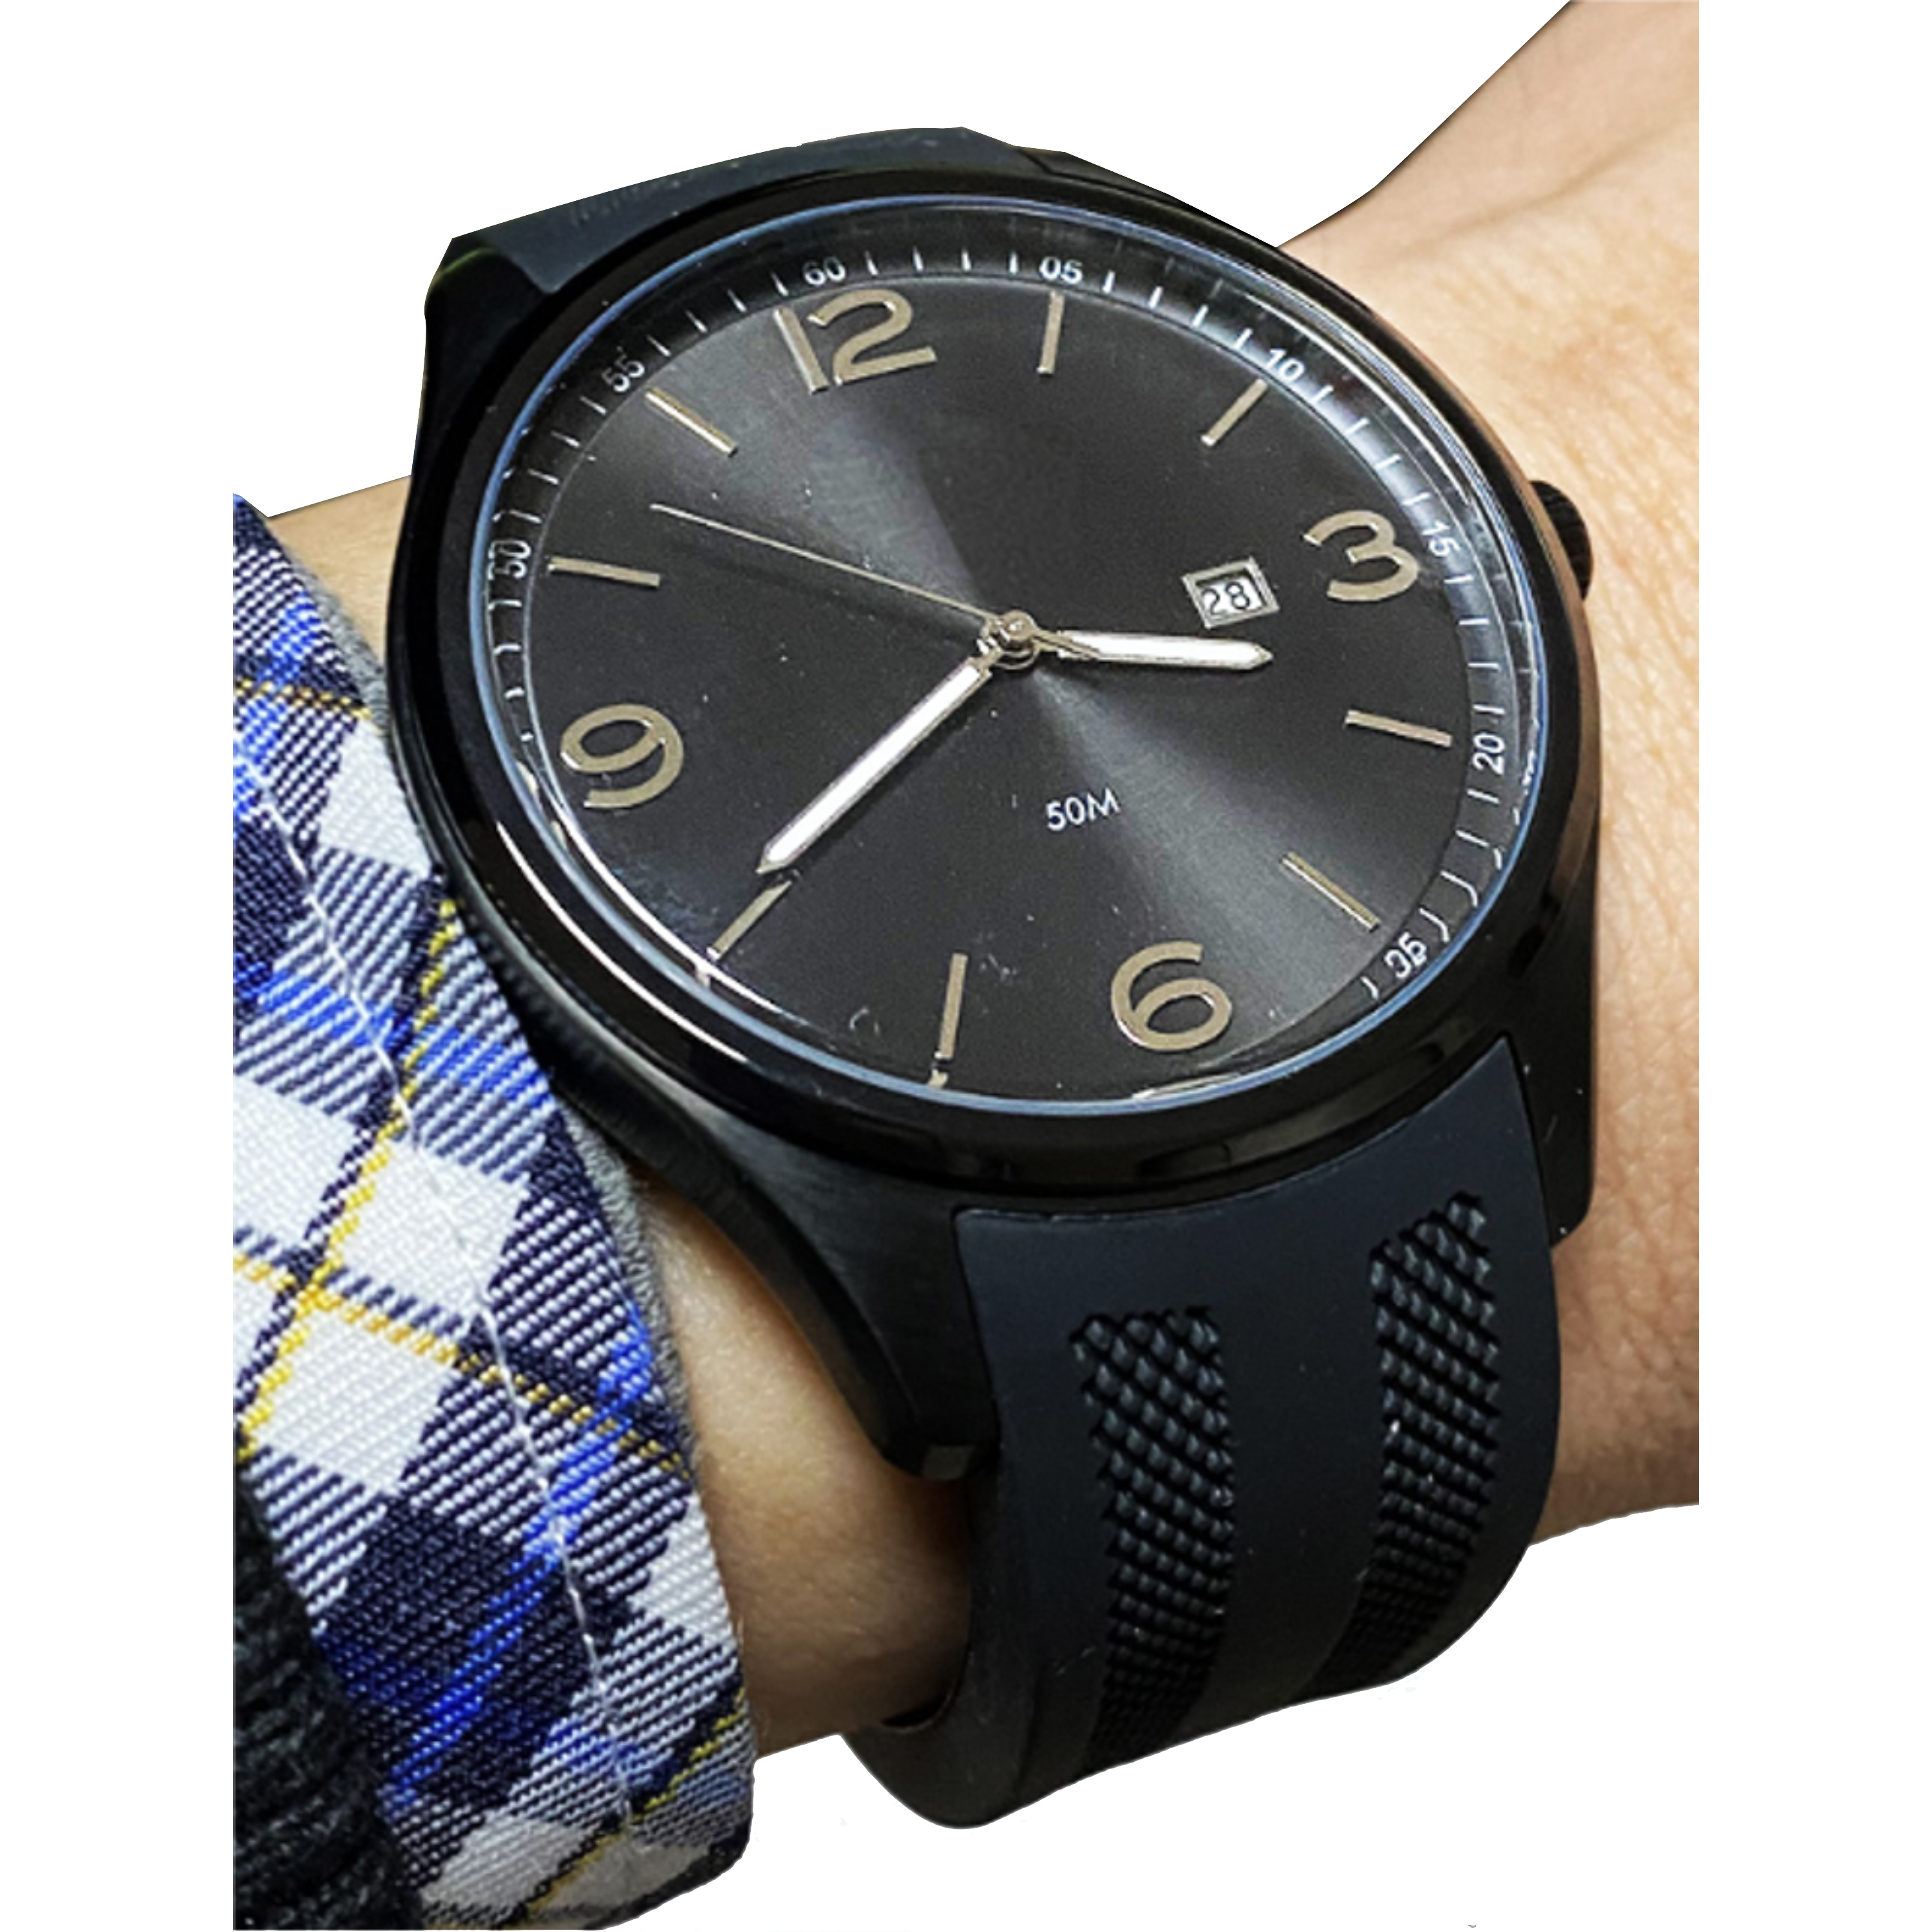 שעון יד לגבר COMTEX S7G-3 44mm - צבע שחור אחריות לשנה ע